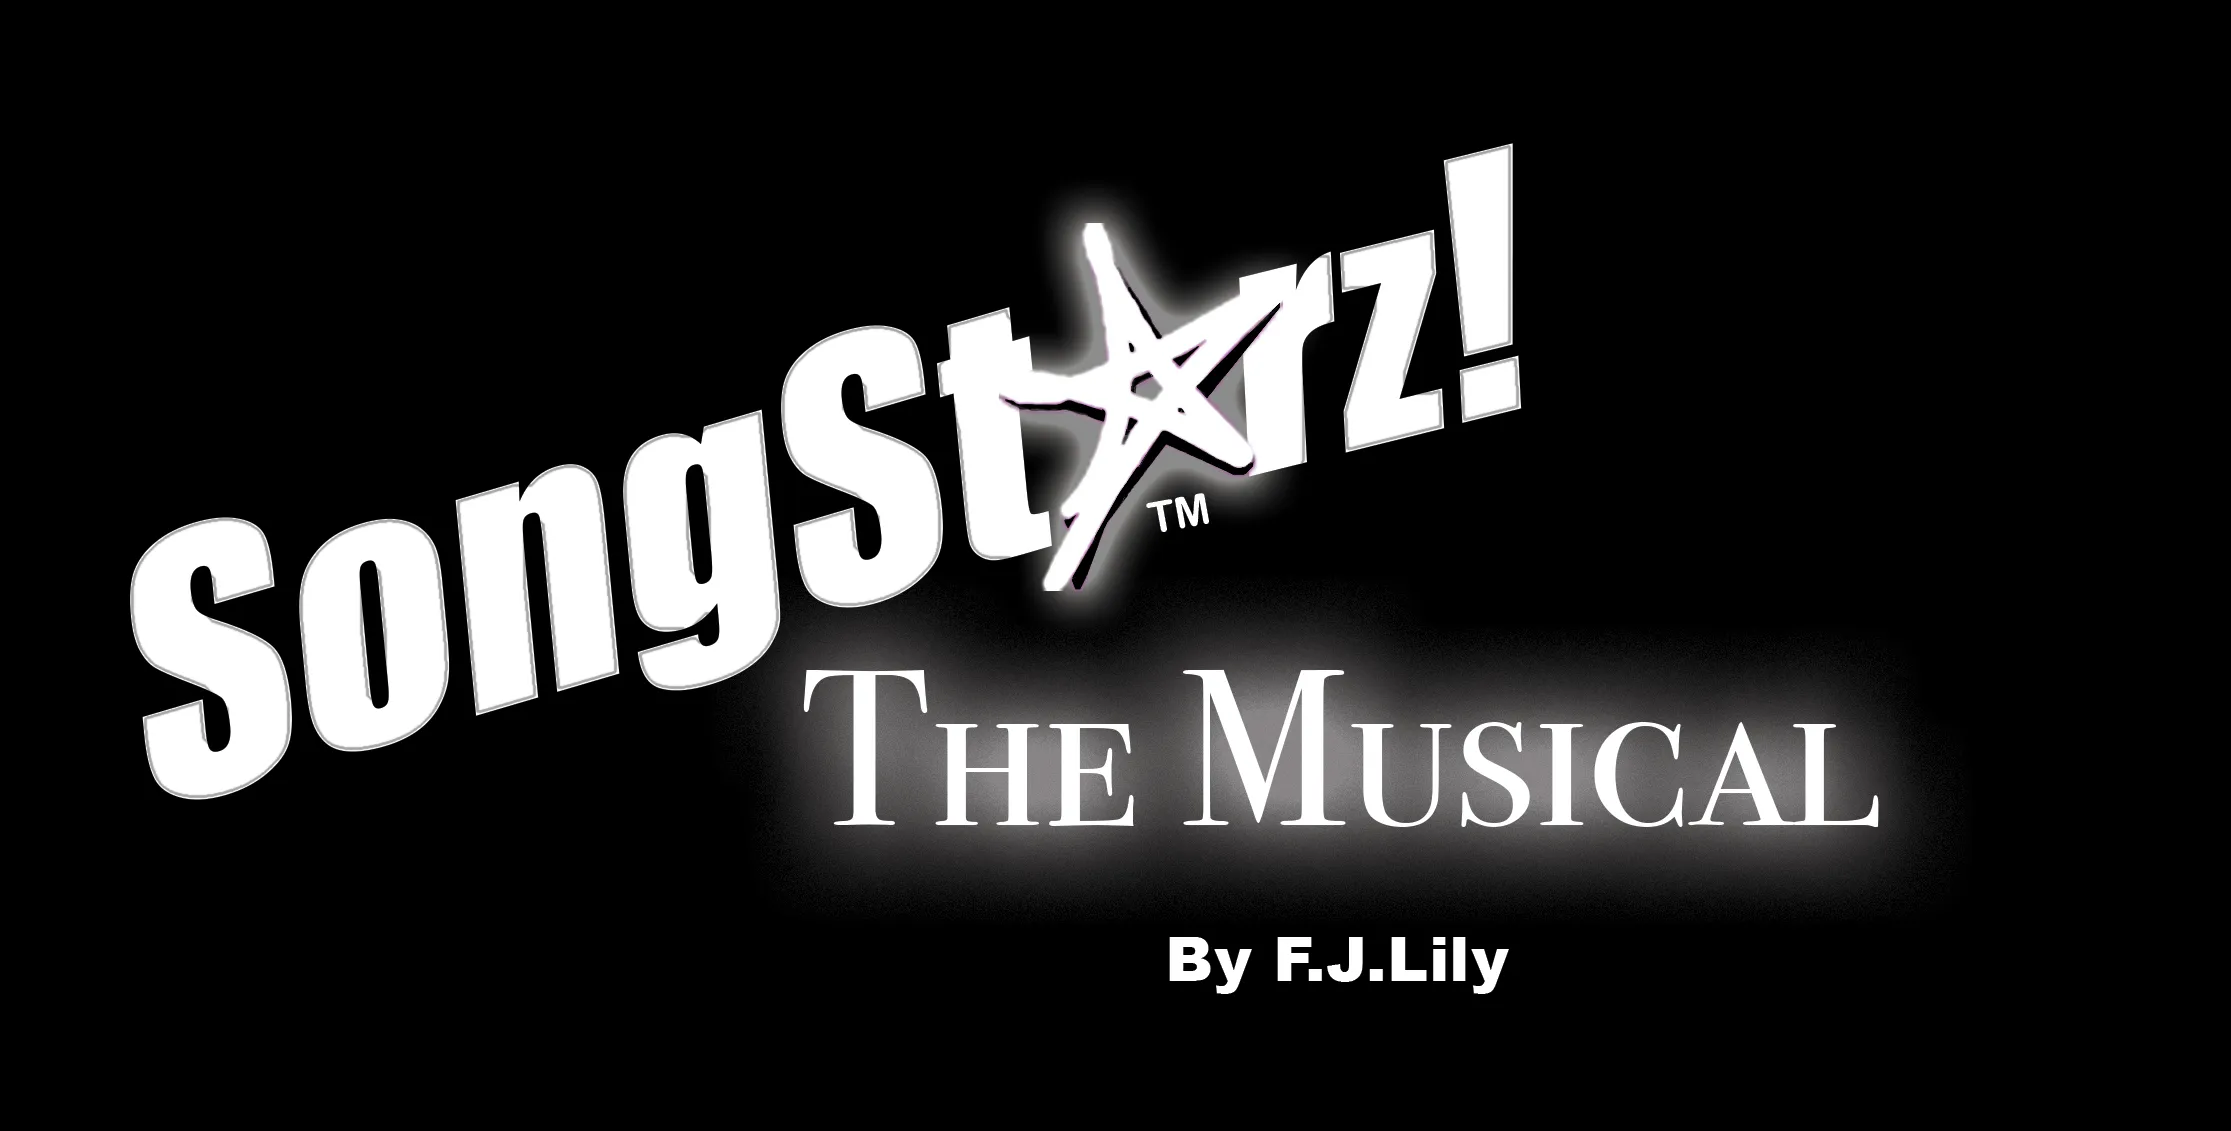 SongStarz - The Musical